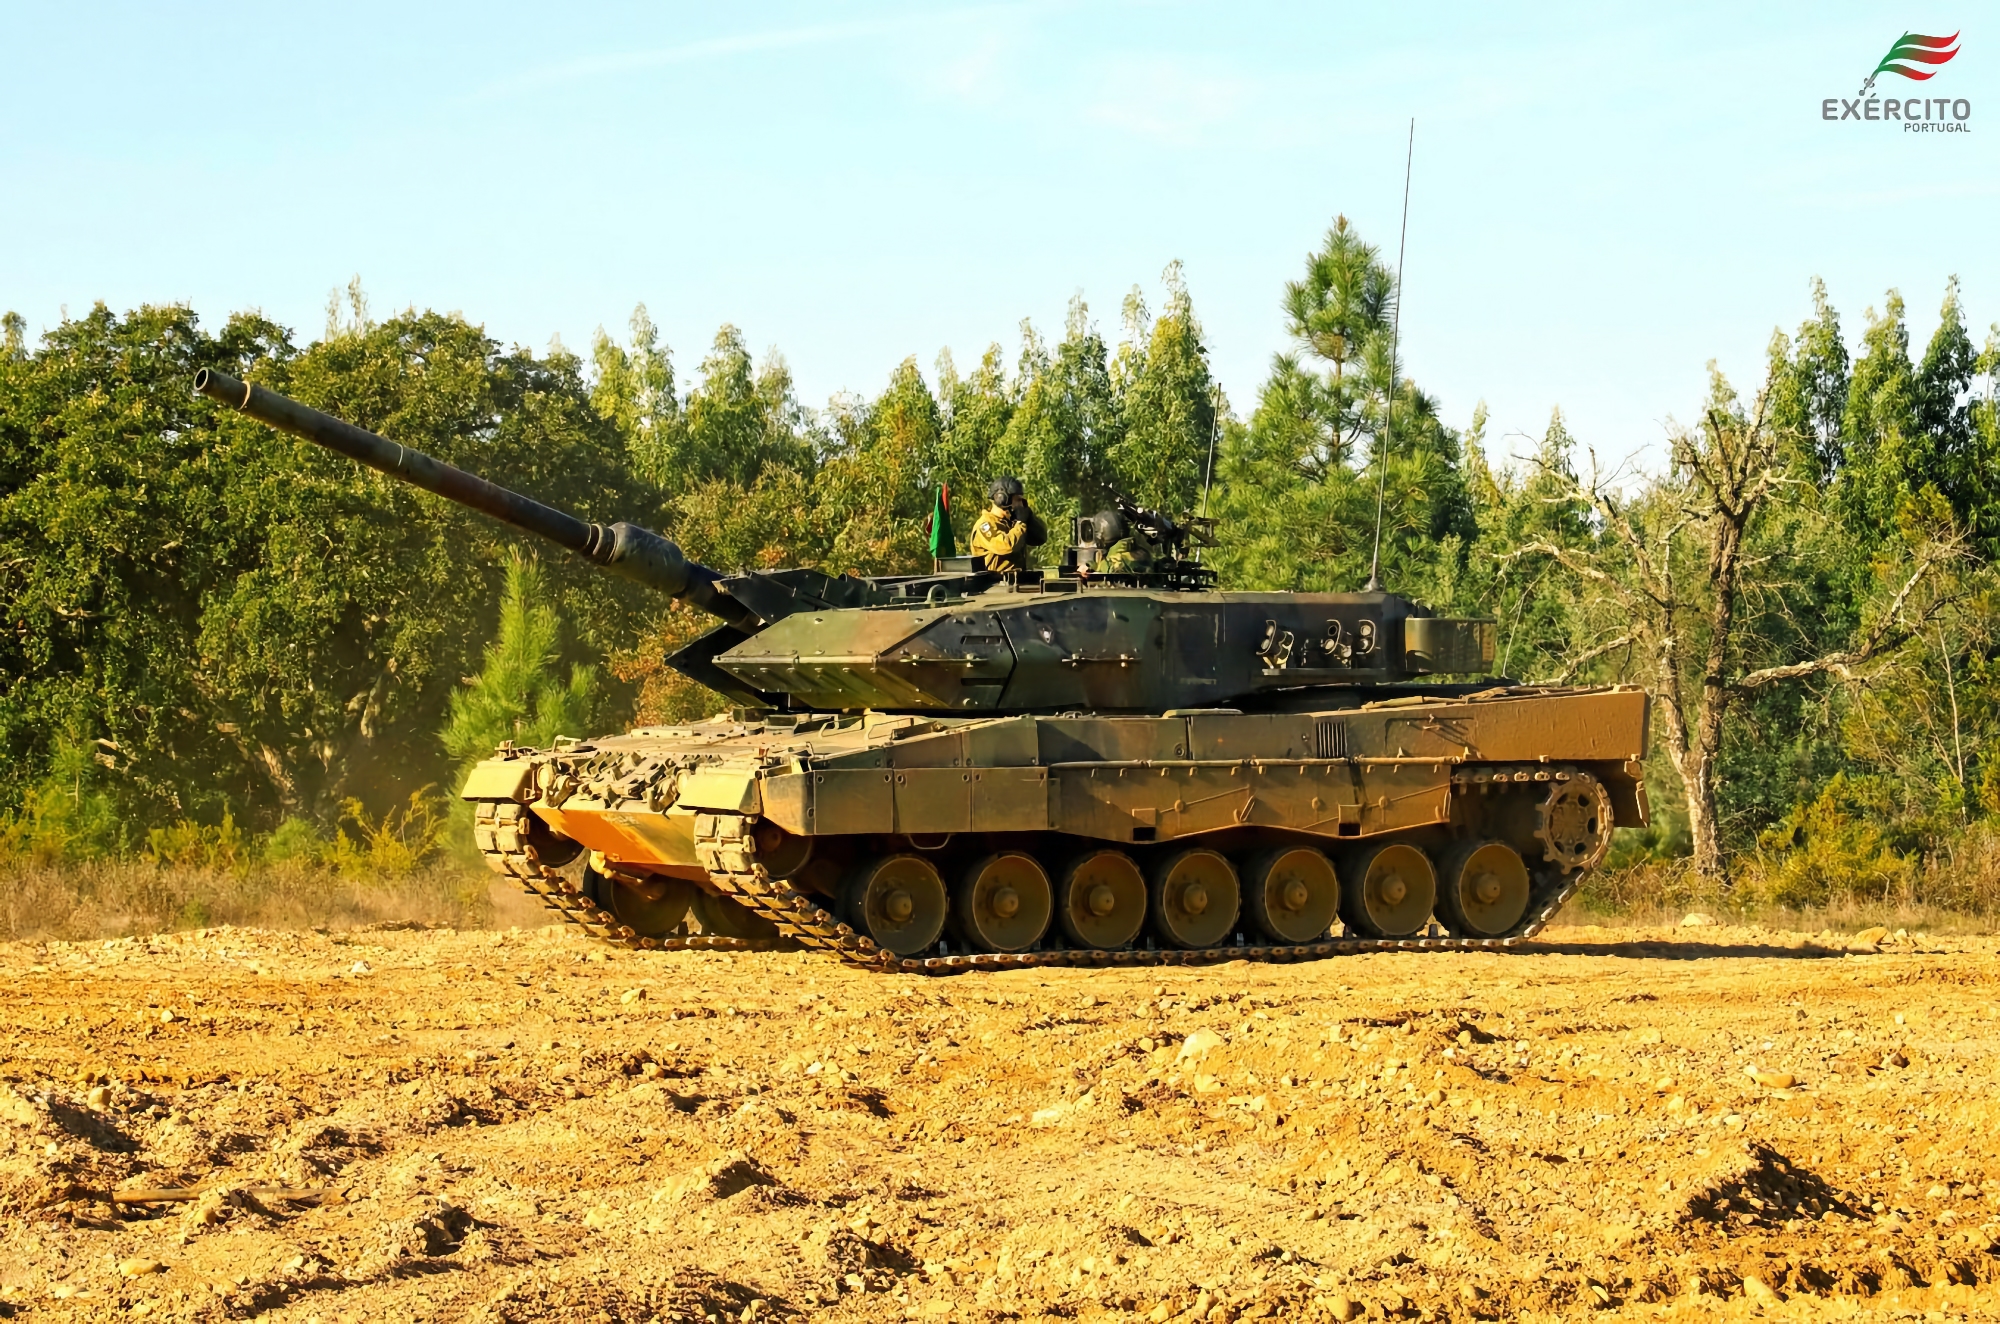 Nach Polen und Deutschland: Portugal übergab der Ukraine Leopard 2-Panzer, jetzt hat die AFU 35 davon